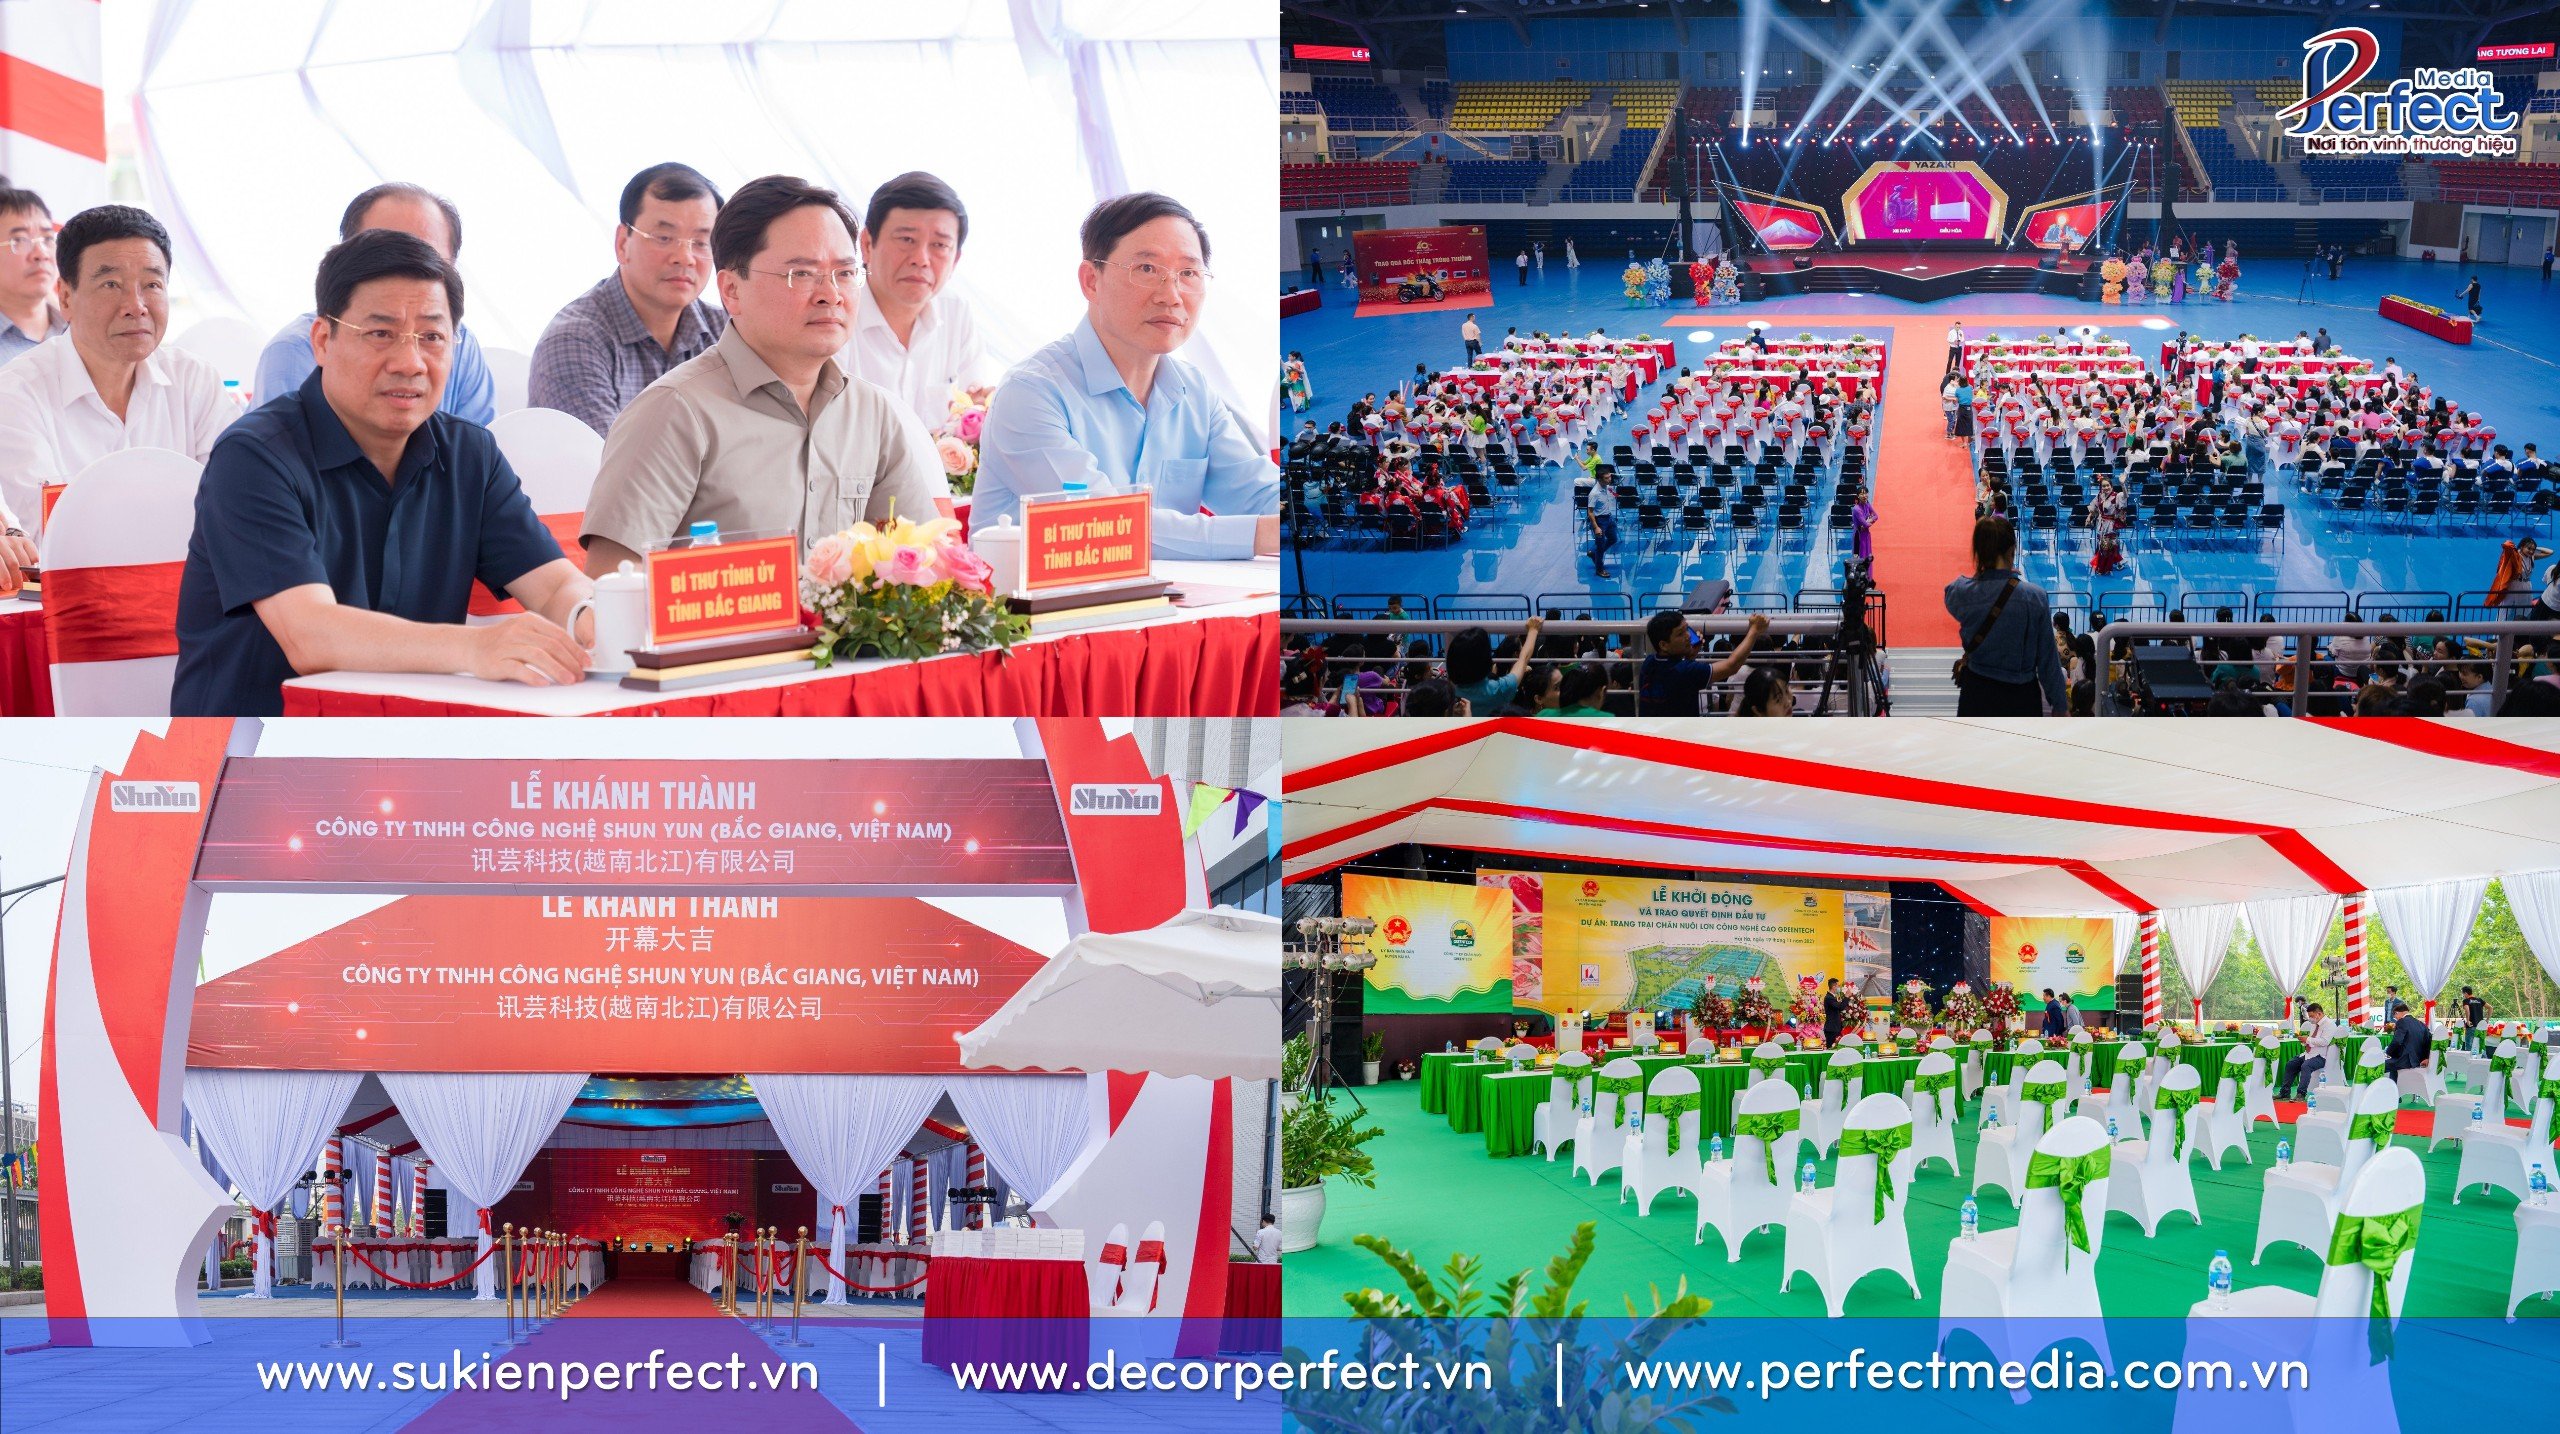 Hình ảnh một số sự kiện tại tỉnh Bắc Giang do Perfect Media cung cấp dịch vụ tổ chức sự kiện ảnh 2